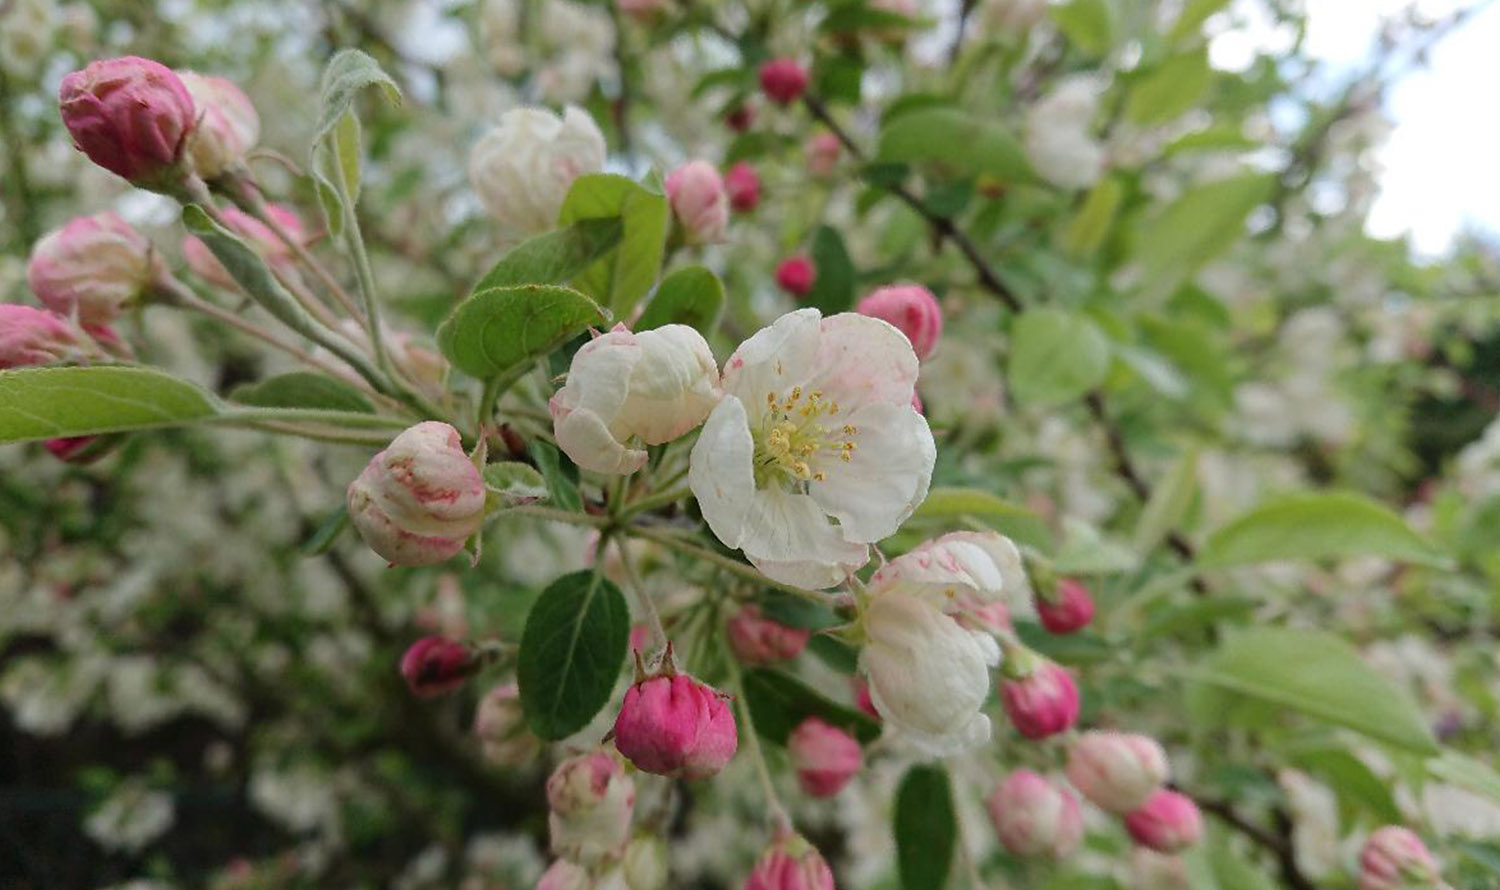 می توانید شکوفه های یک درخت سیب و جوانه هایی را ببینید که به زودی باز می شوند.